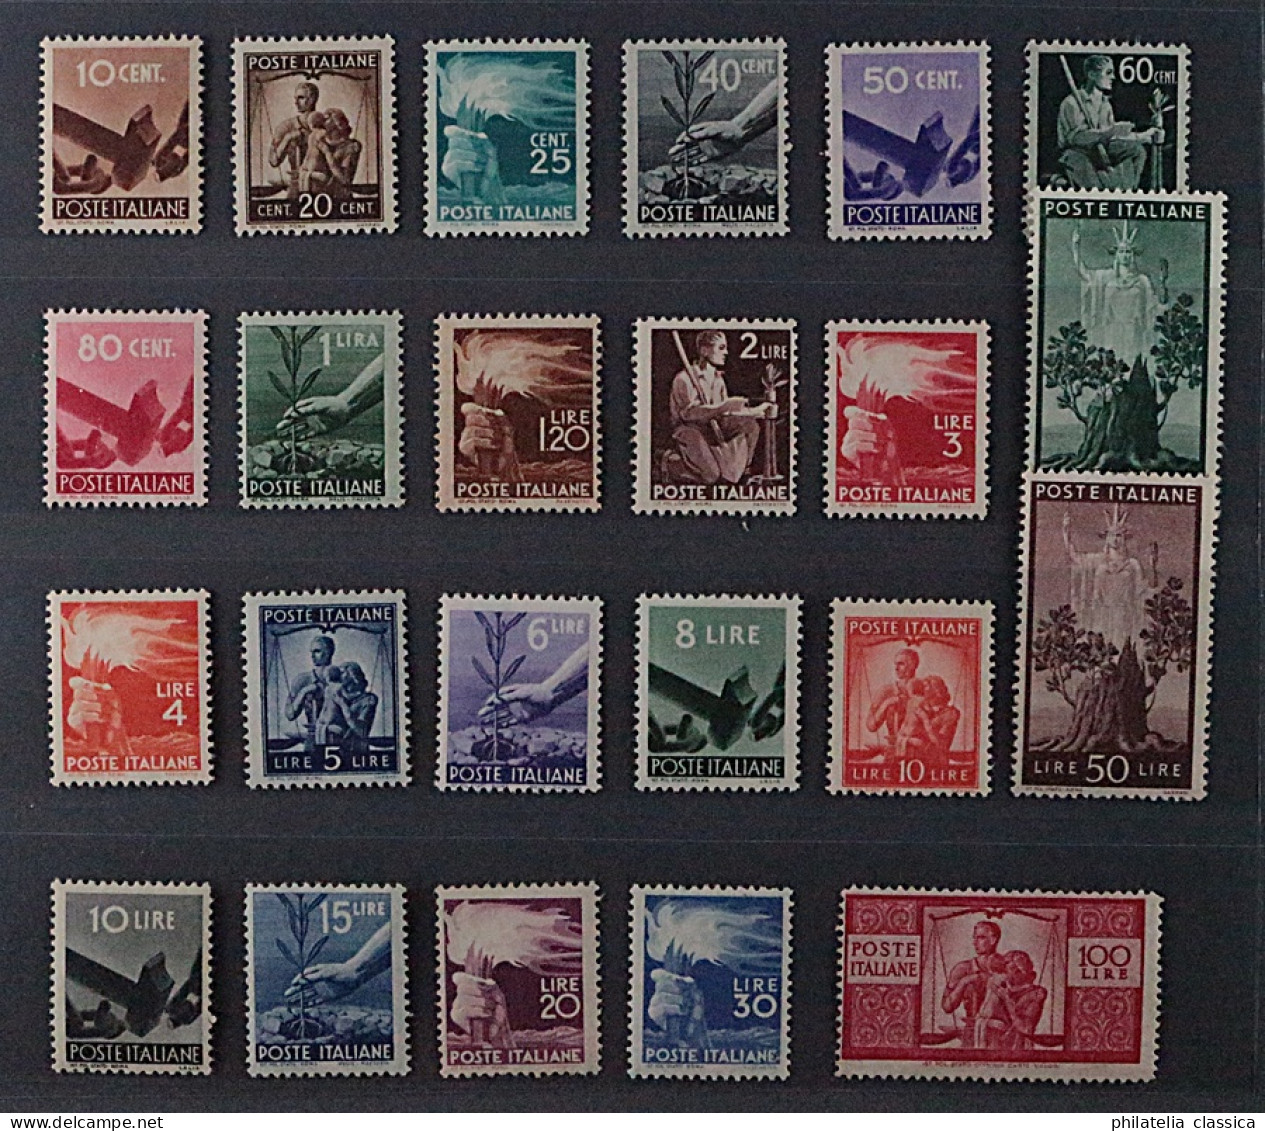 Italien  682-704 **  Freimarken 1945, 23 Werte Komplett, Postfrisch, KW 1000,- € - 1946-60: Neufs